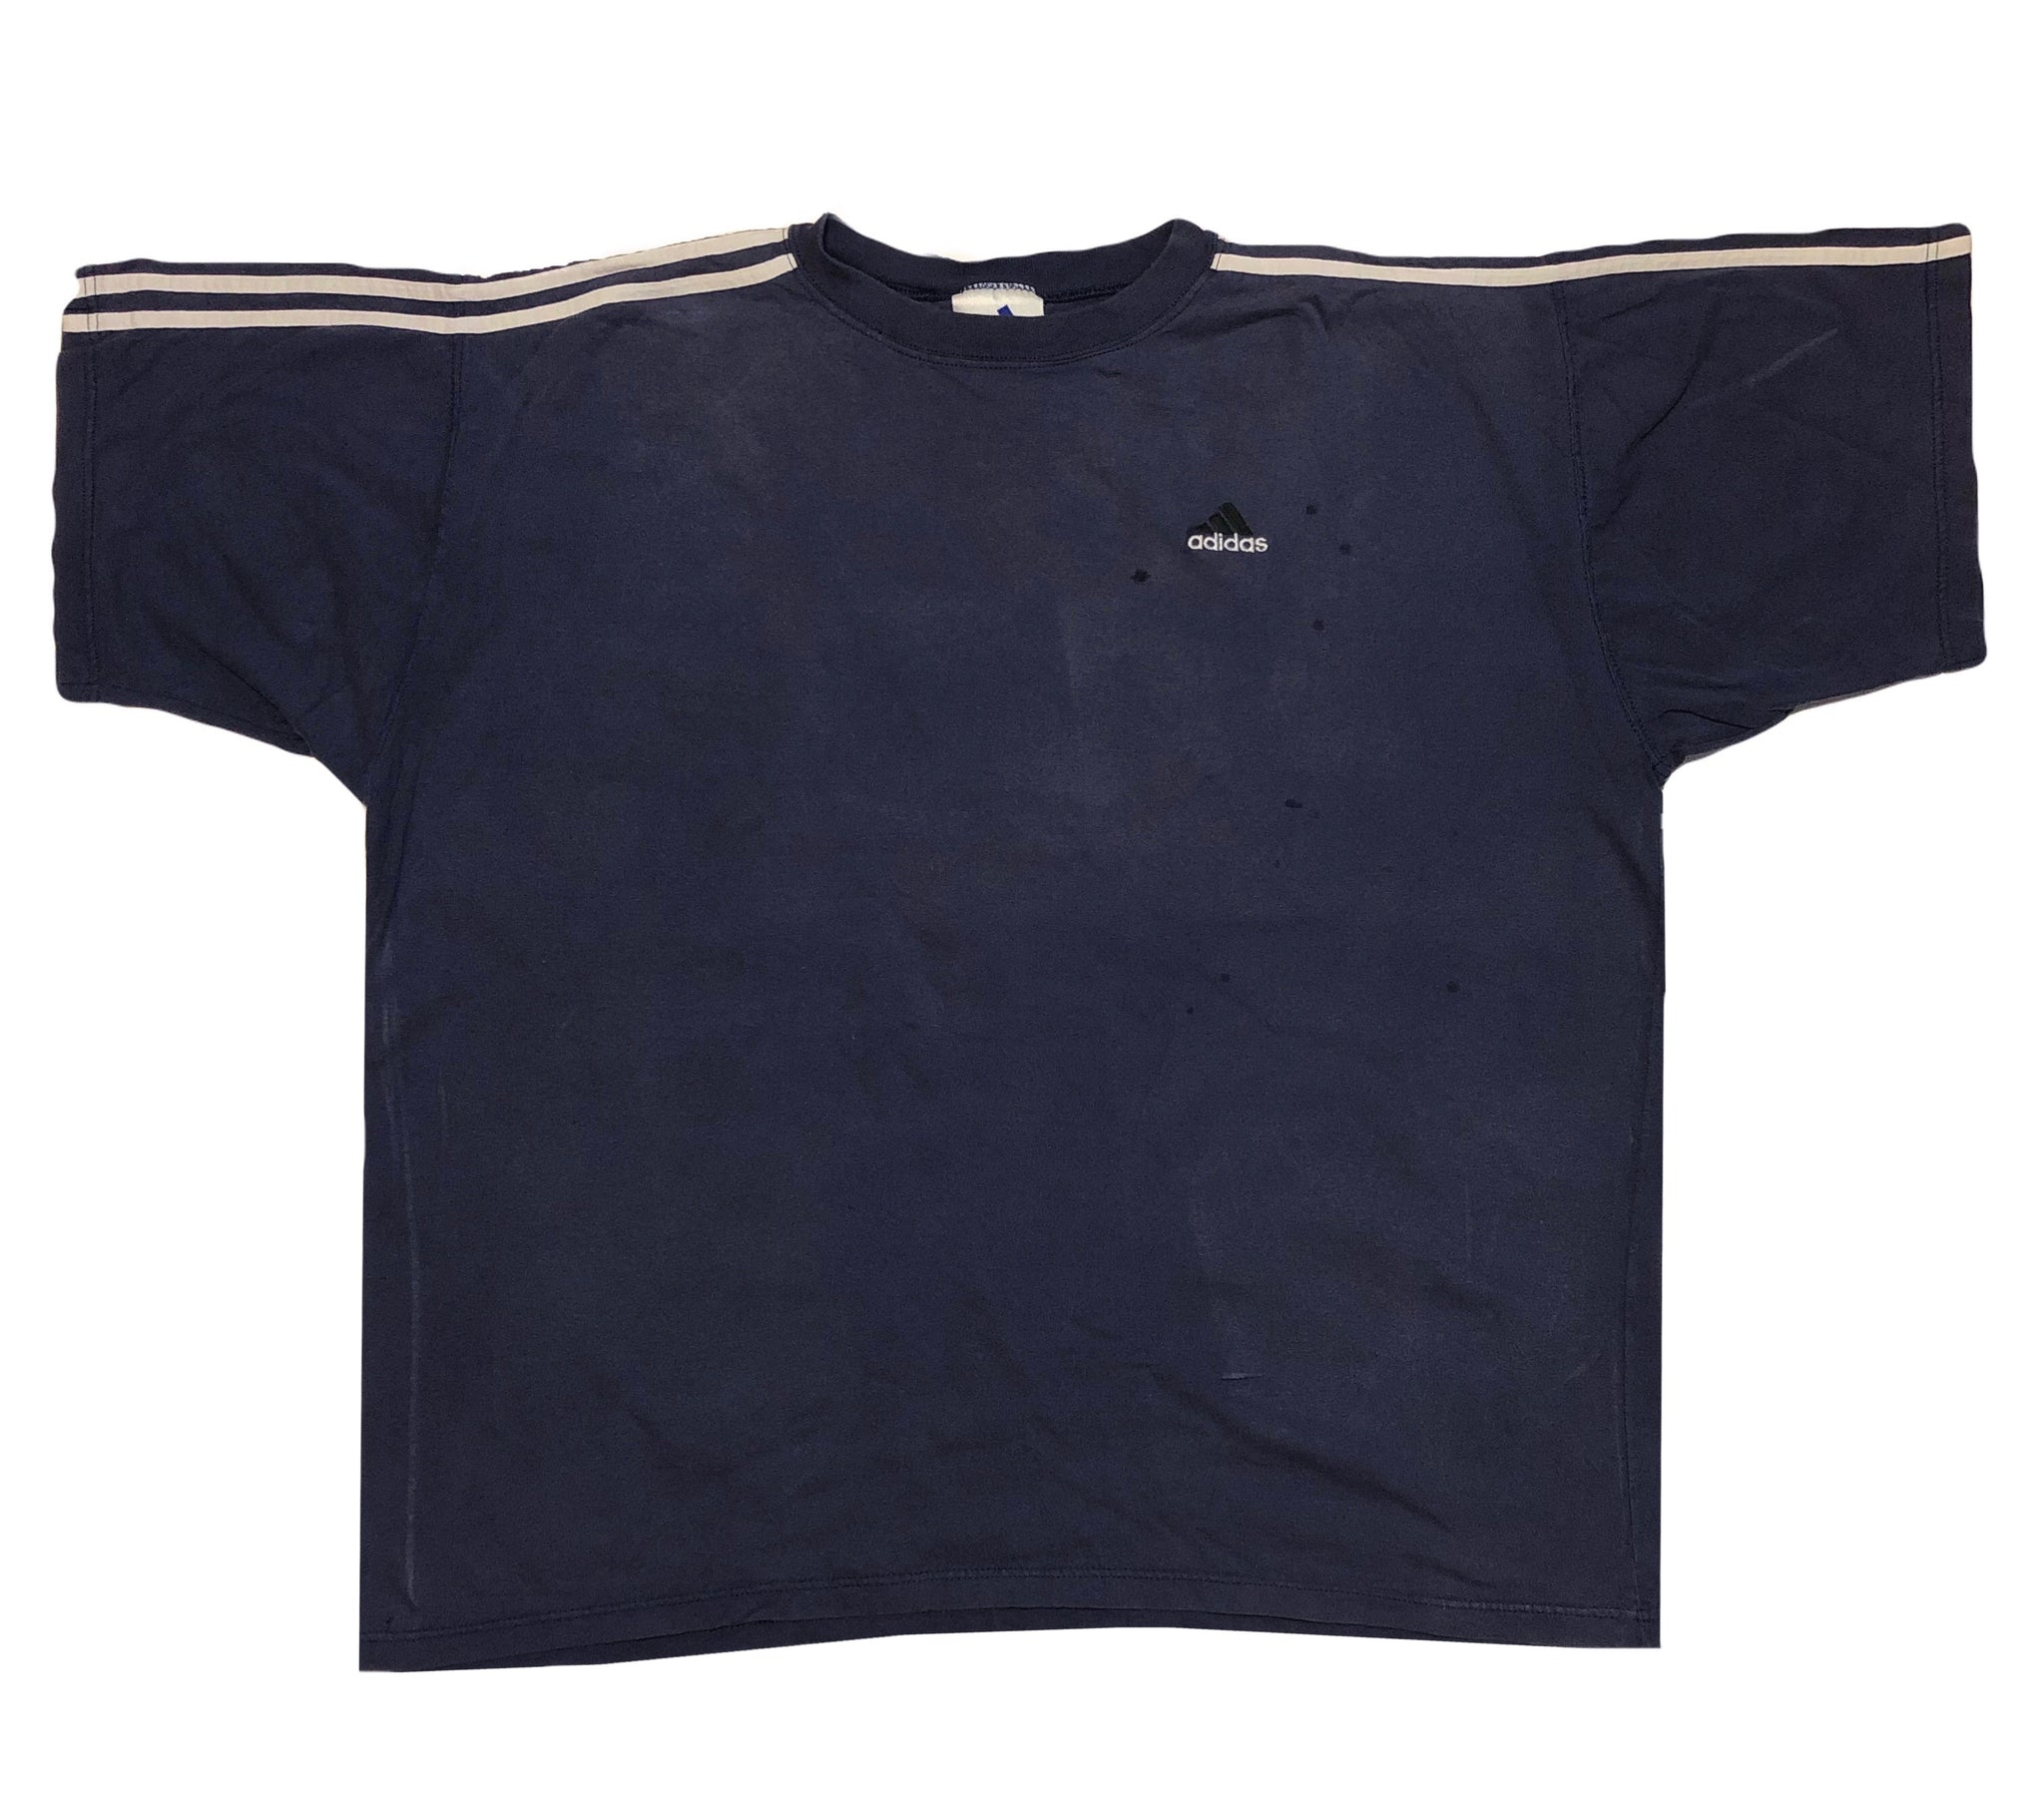 Vintage 90s Adidas Three Stripes Shirt | Beyond 94